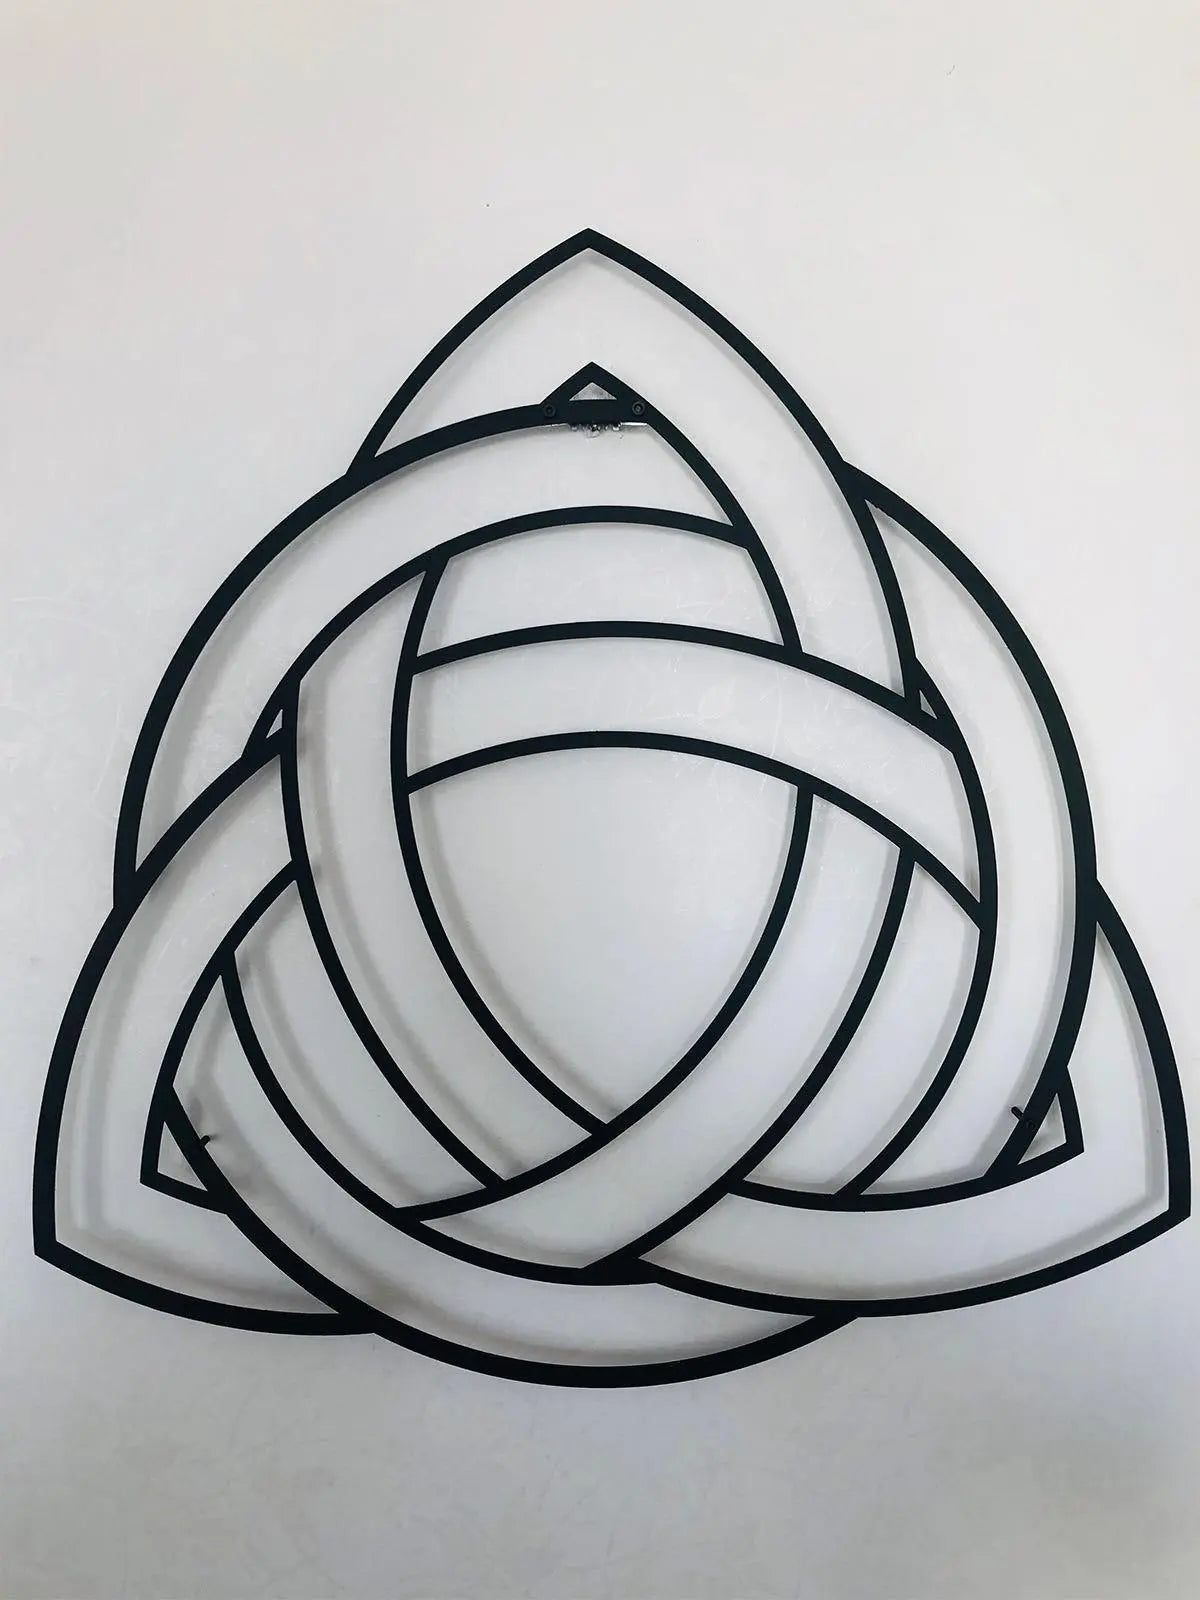 Gordion Düğümü Dekoratif Metal Duvar Tablosu - Metalium Concept